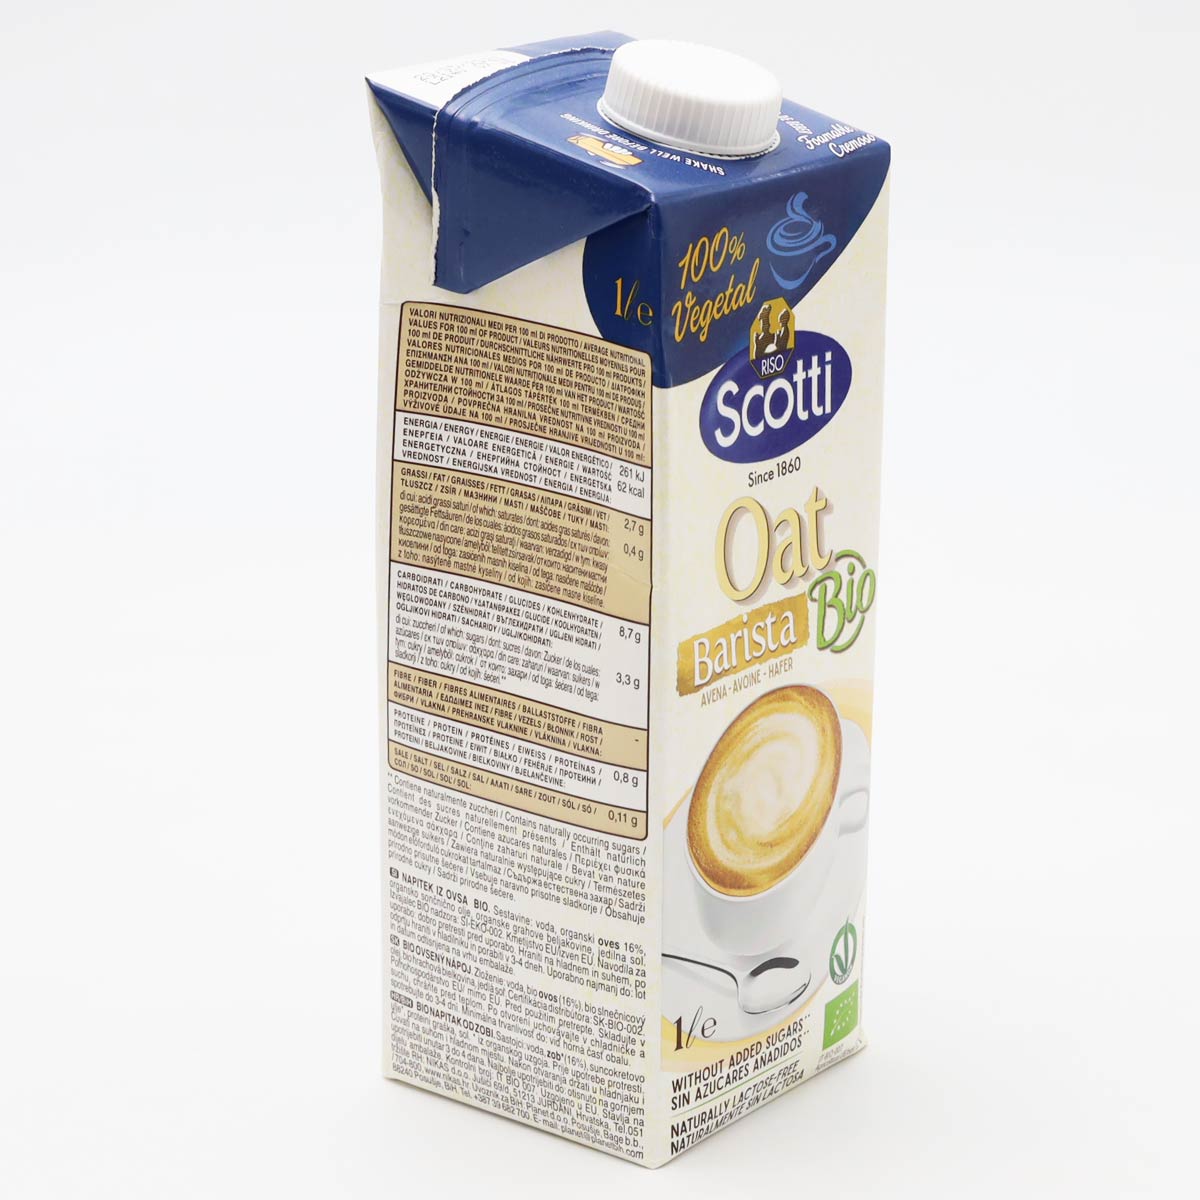 スコッティ Scotti 有機グルテンフリー オーツ麦ミルク 1L  オーツミルク  1L × 10本セット 業務用  植物性ミルク ノンシュガー 有機JAS認定  EU有機認証 イタリア産